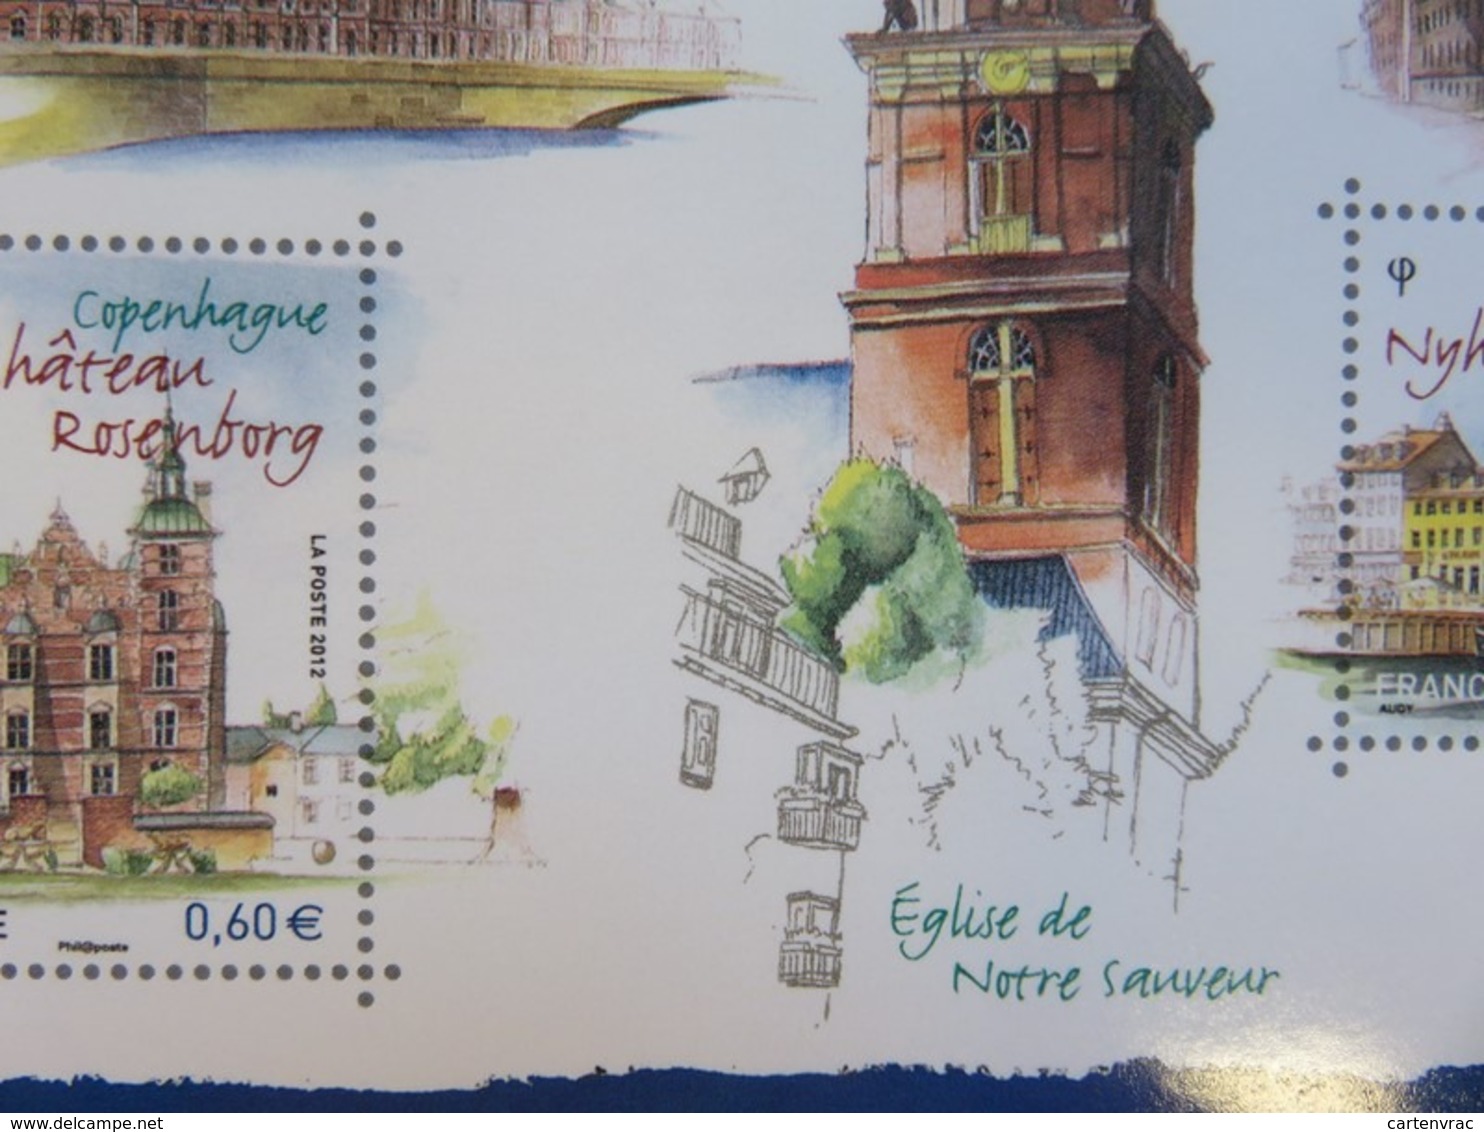 PAP - Carte Postale Pré-timbrée - Timbre International - Copenhage Capitale Européenne - Série Capitales - NEUF - Documents De La Poste